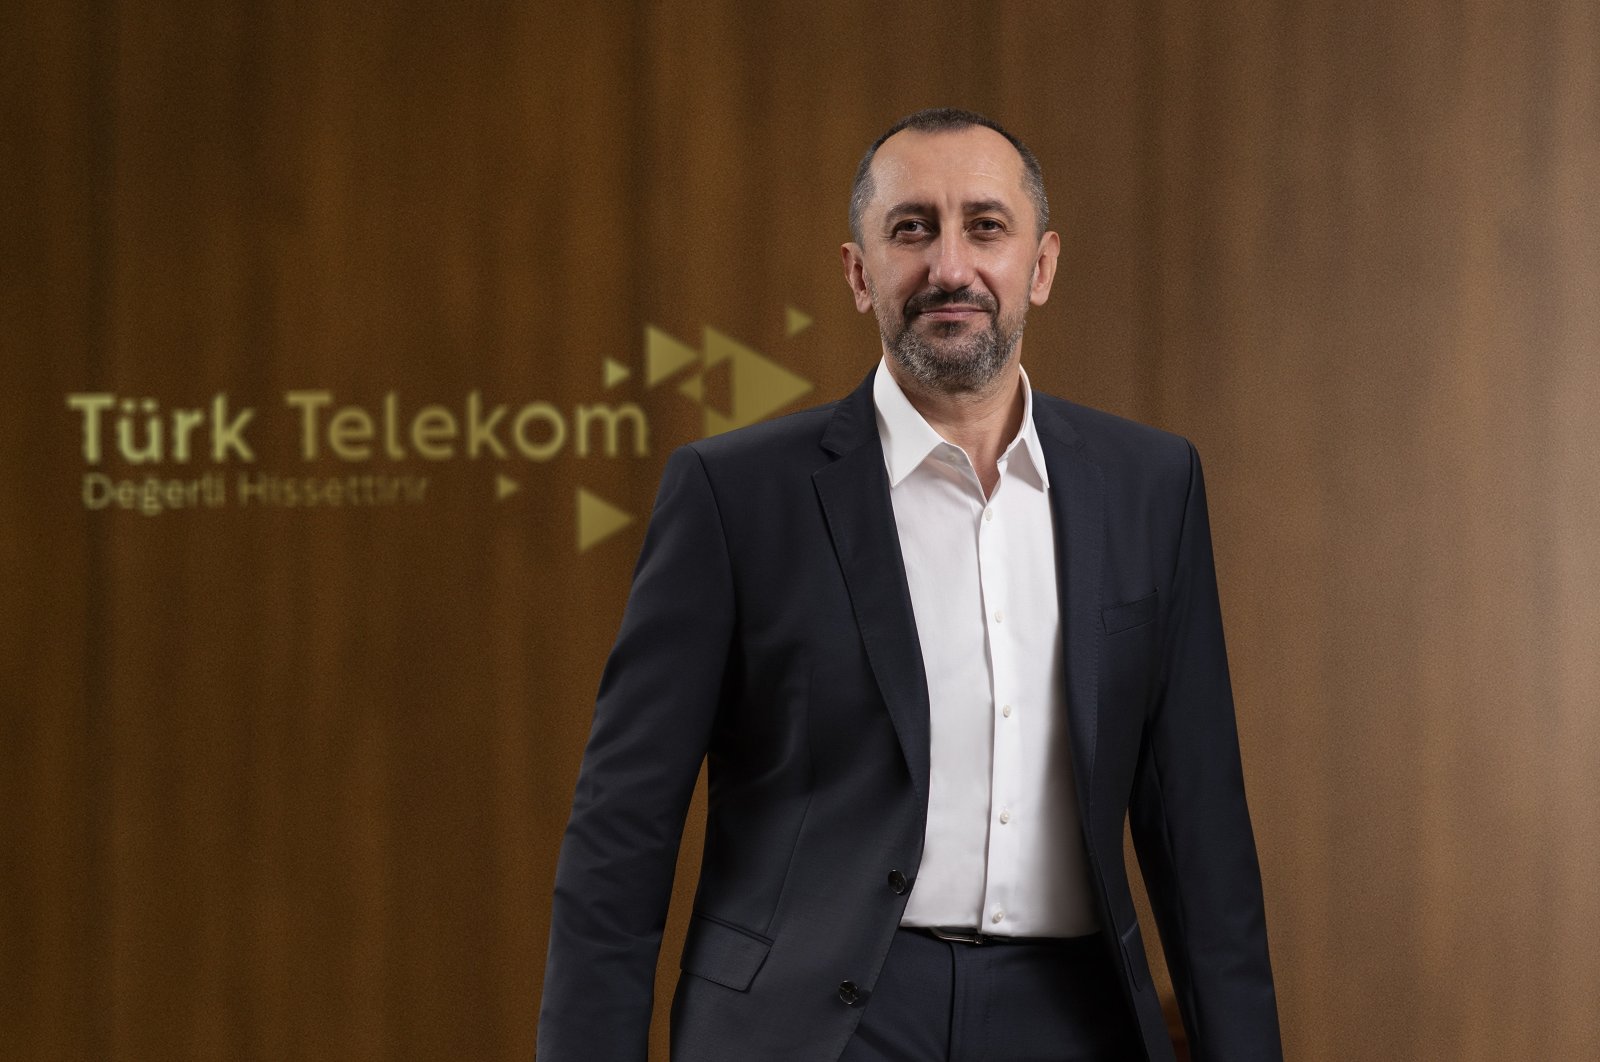 Türk Telekom CEO Ümit Önal in this photo provided on Jan. 13, 2021. (Courtesy of Türk Telekom)